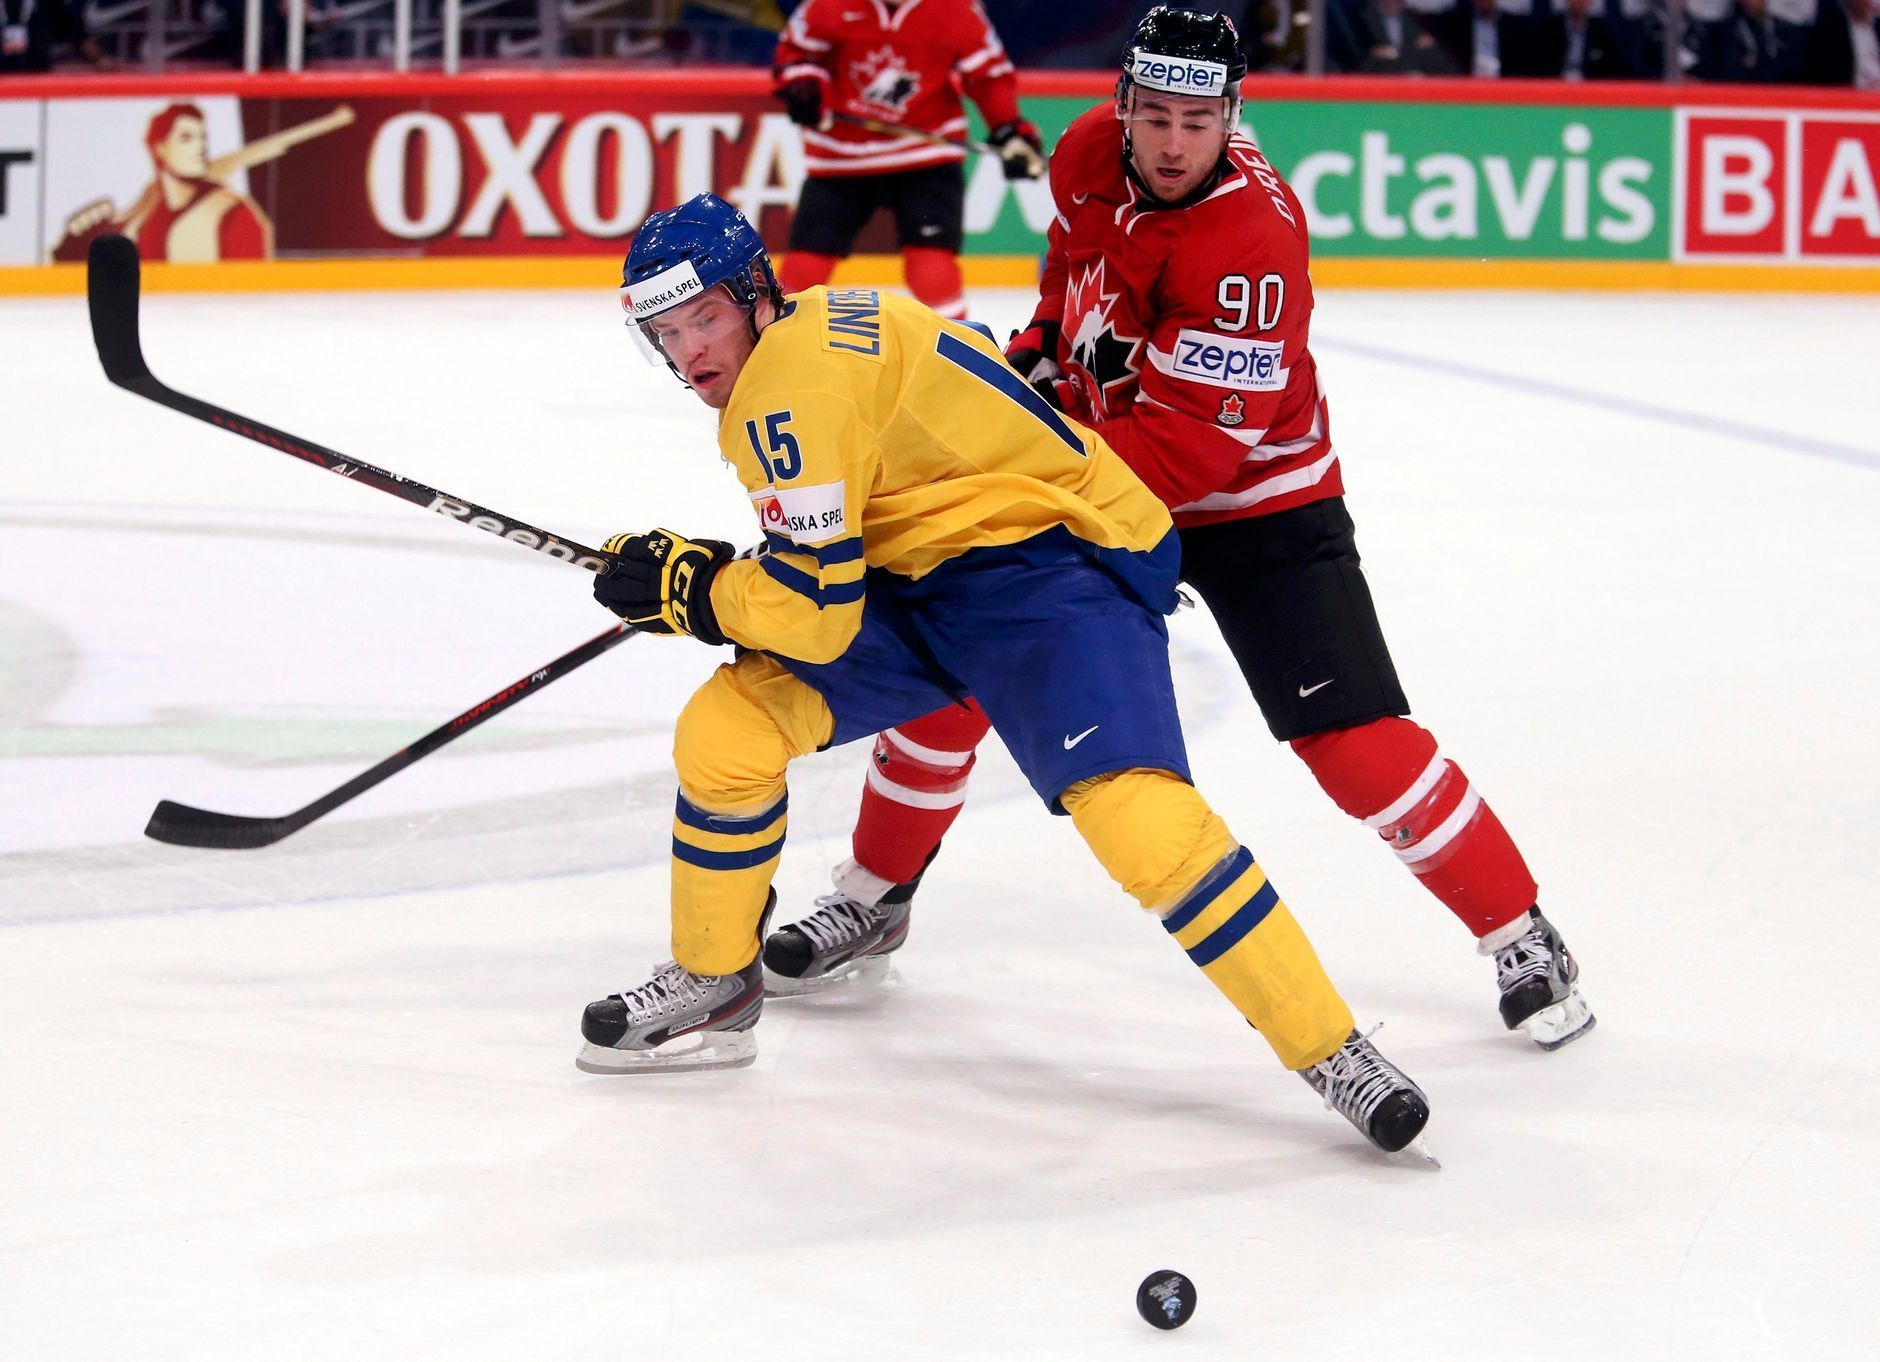 MS 2013: Švédsko - Kanada (Ryan O'Reilly vs. Oscar Lindberg)